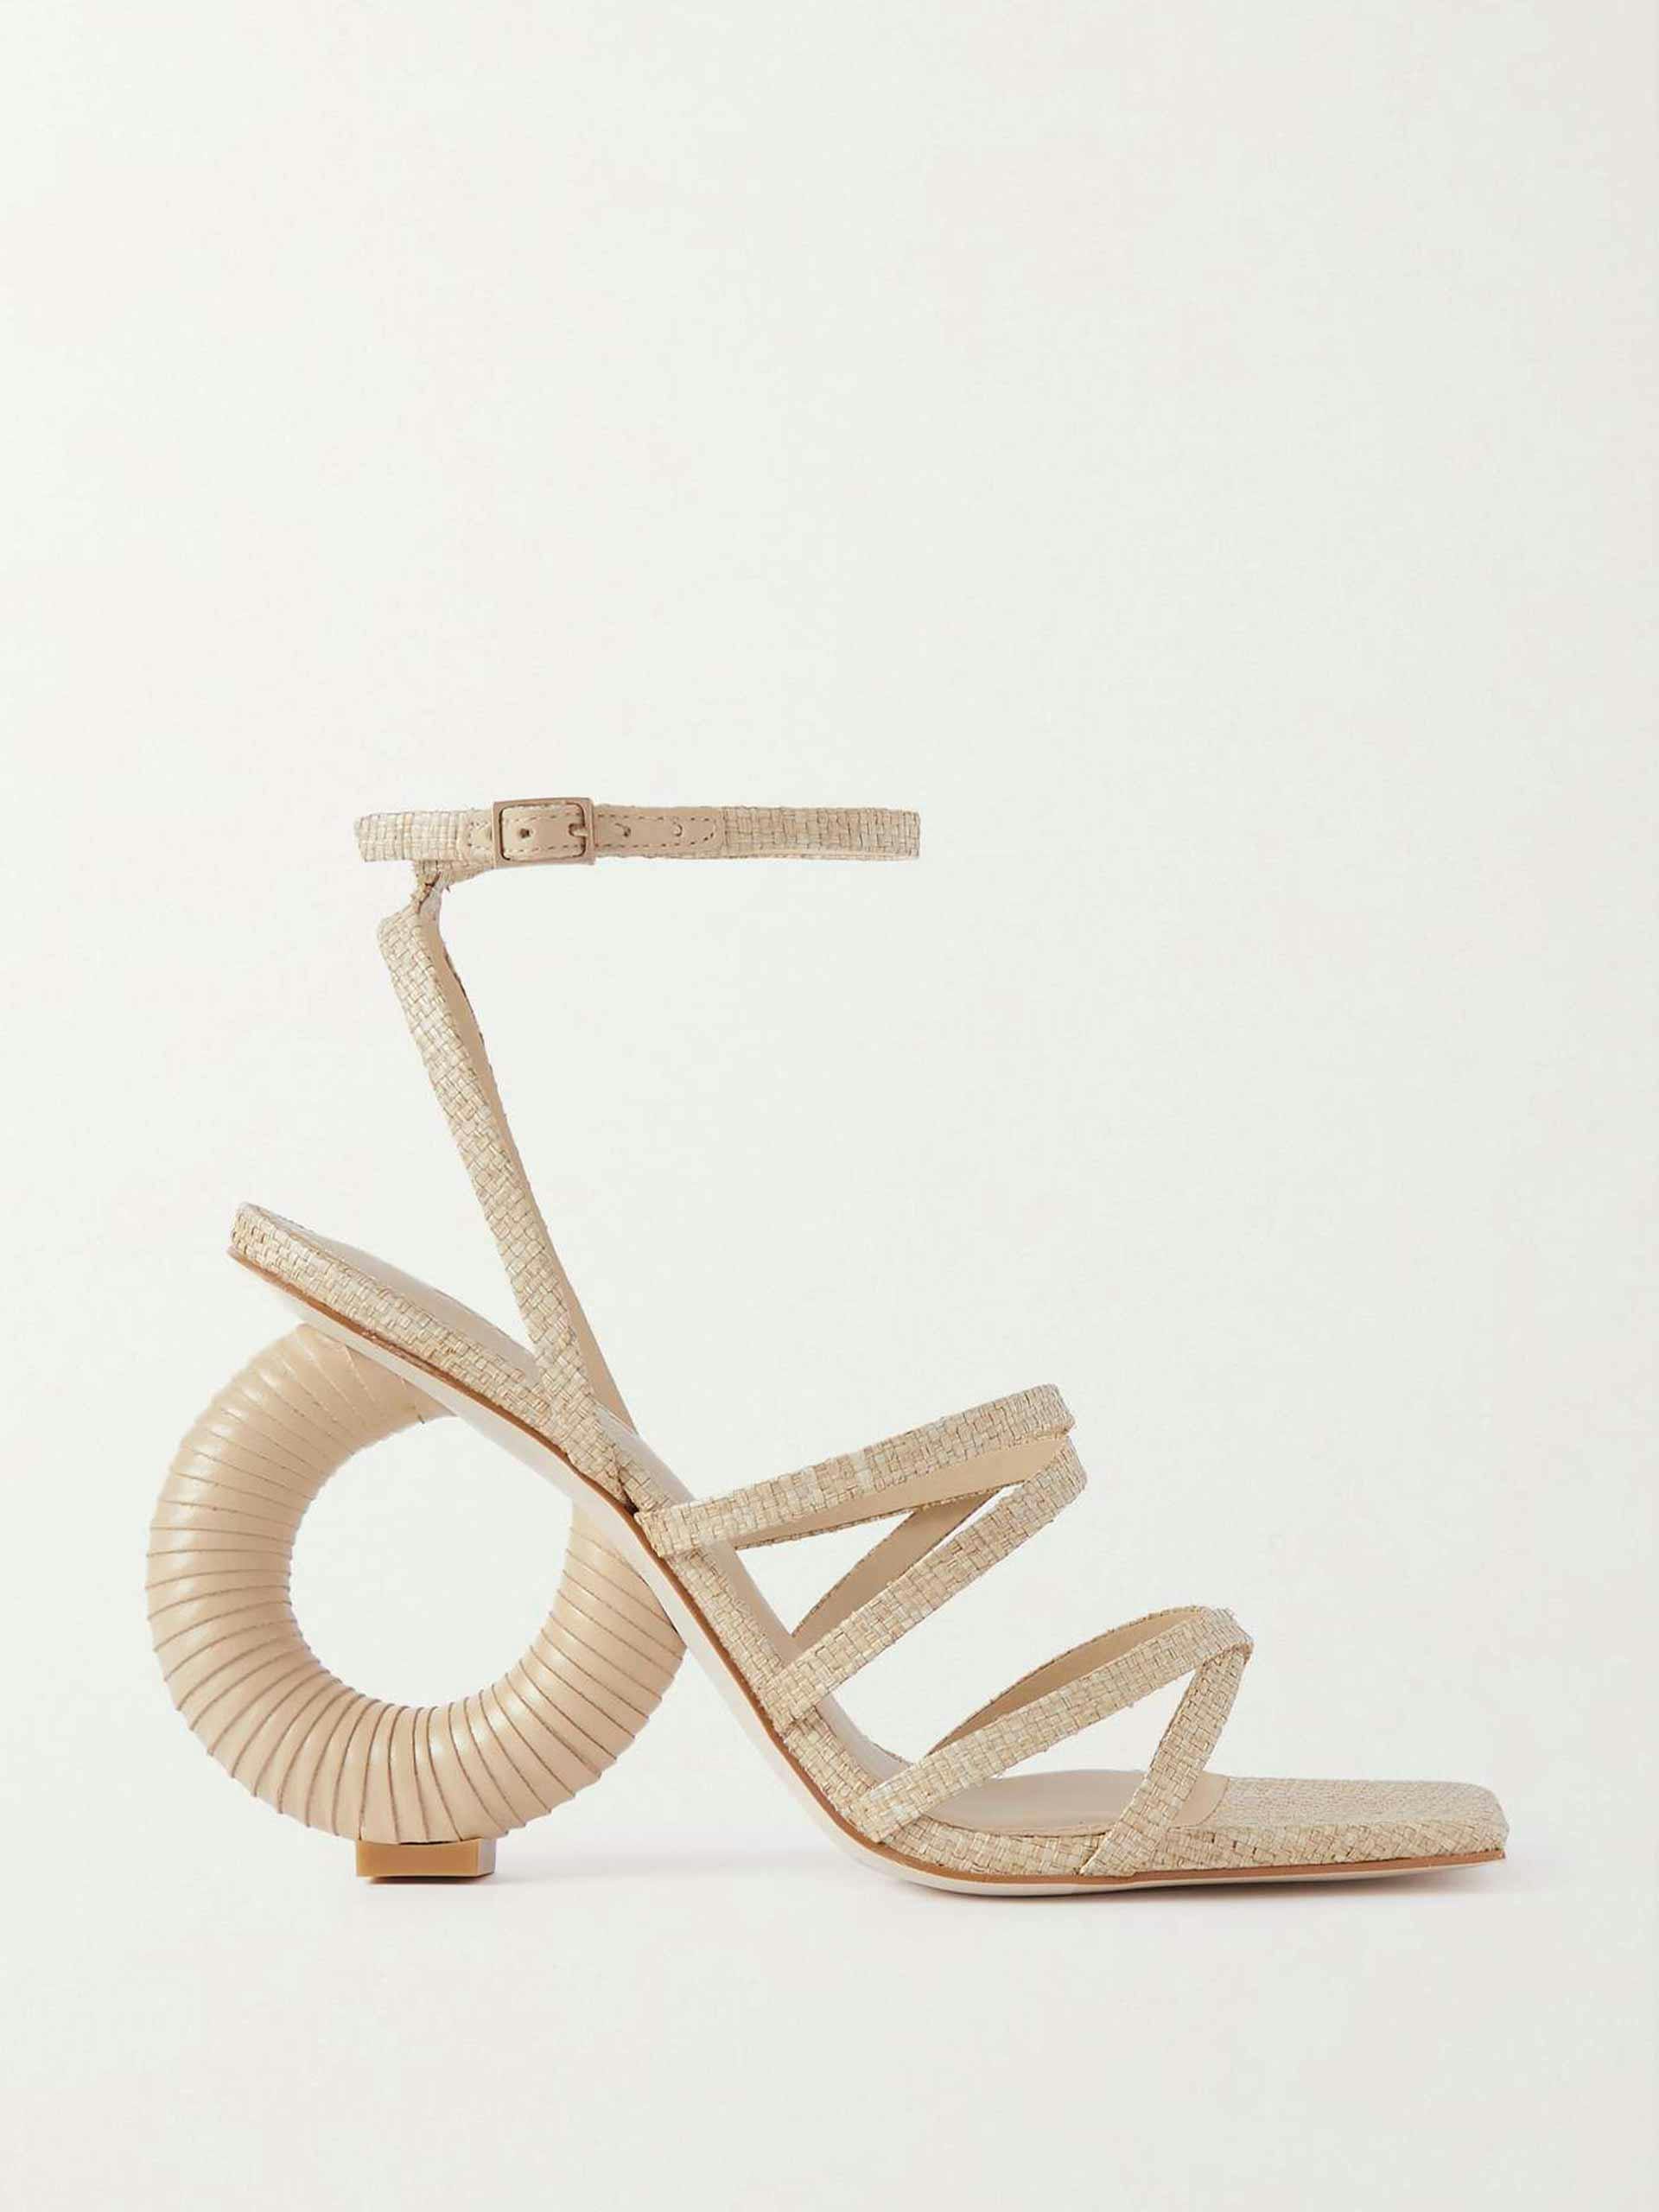 Raffia sandals